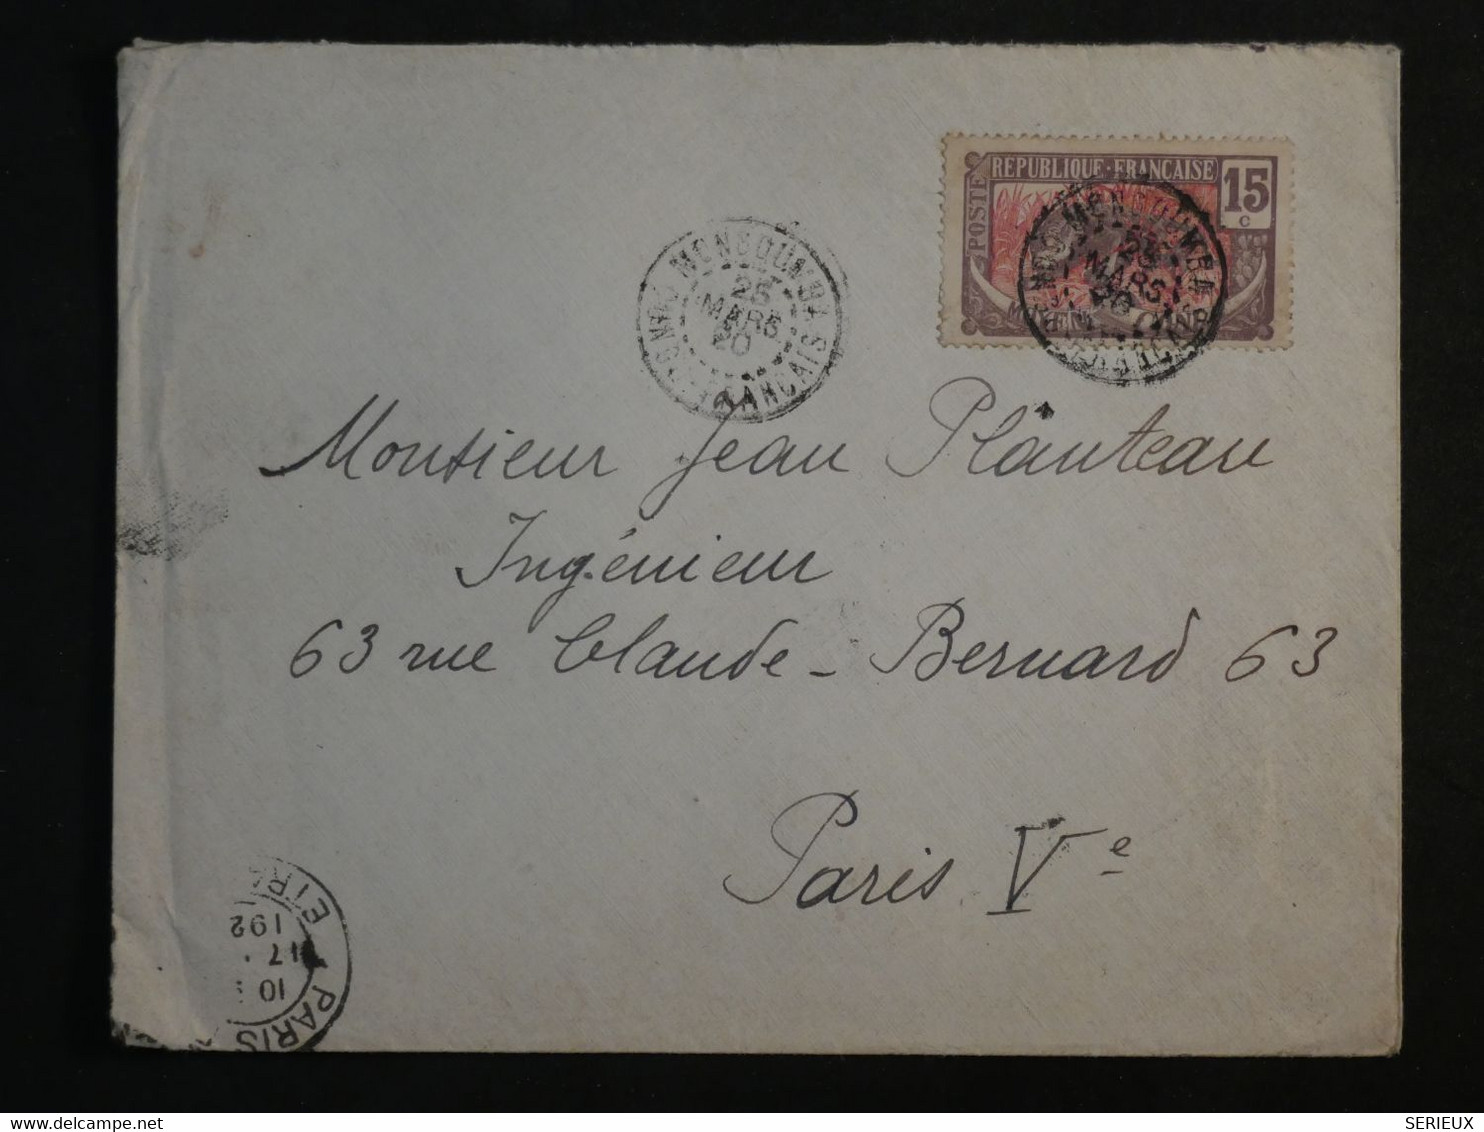 BM11  CAMEROUN CONGO FRANC.  BELLE  LETTRE 1920  PETIT BUREAU  MONGOUMBI ?  A PARIS FRANCE + +AFFRANCH. INTERESSANT++++ - Storia Postale